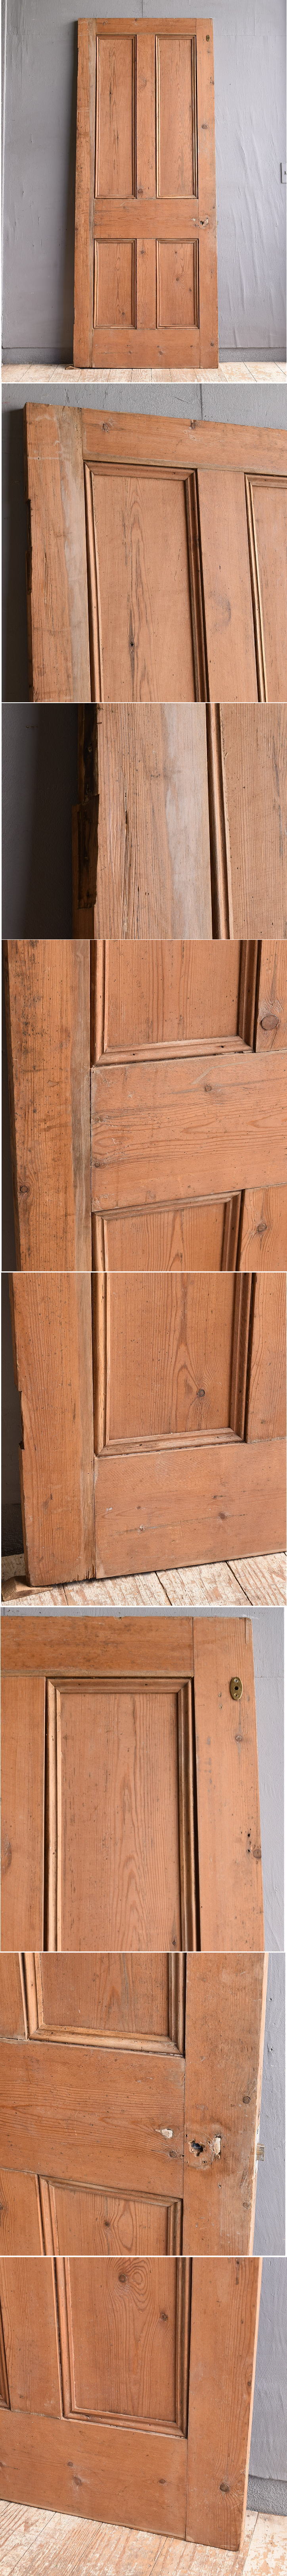 イギリス アンティーク オールドパイン ドア 扉 建具 11798